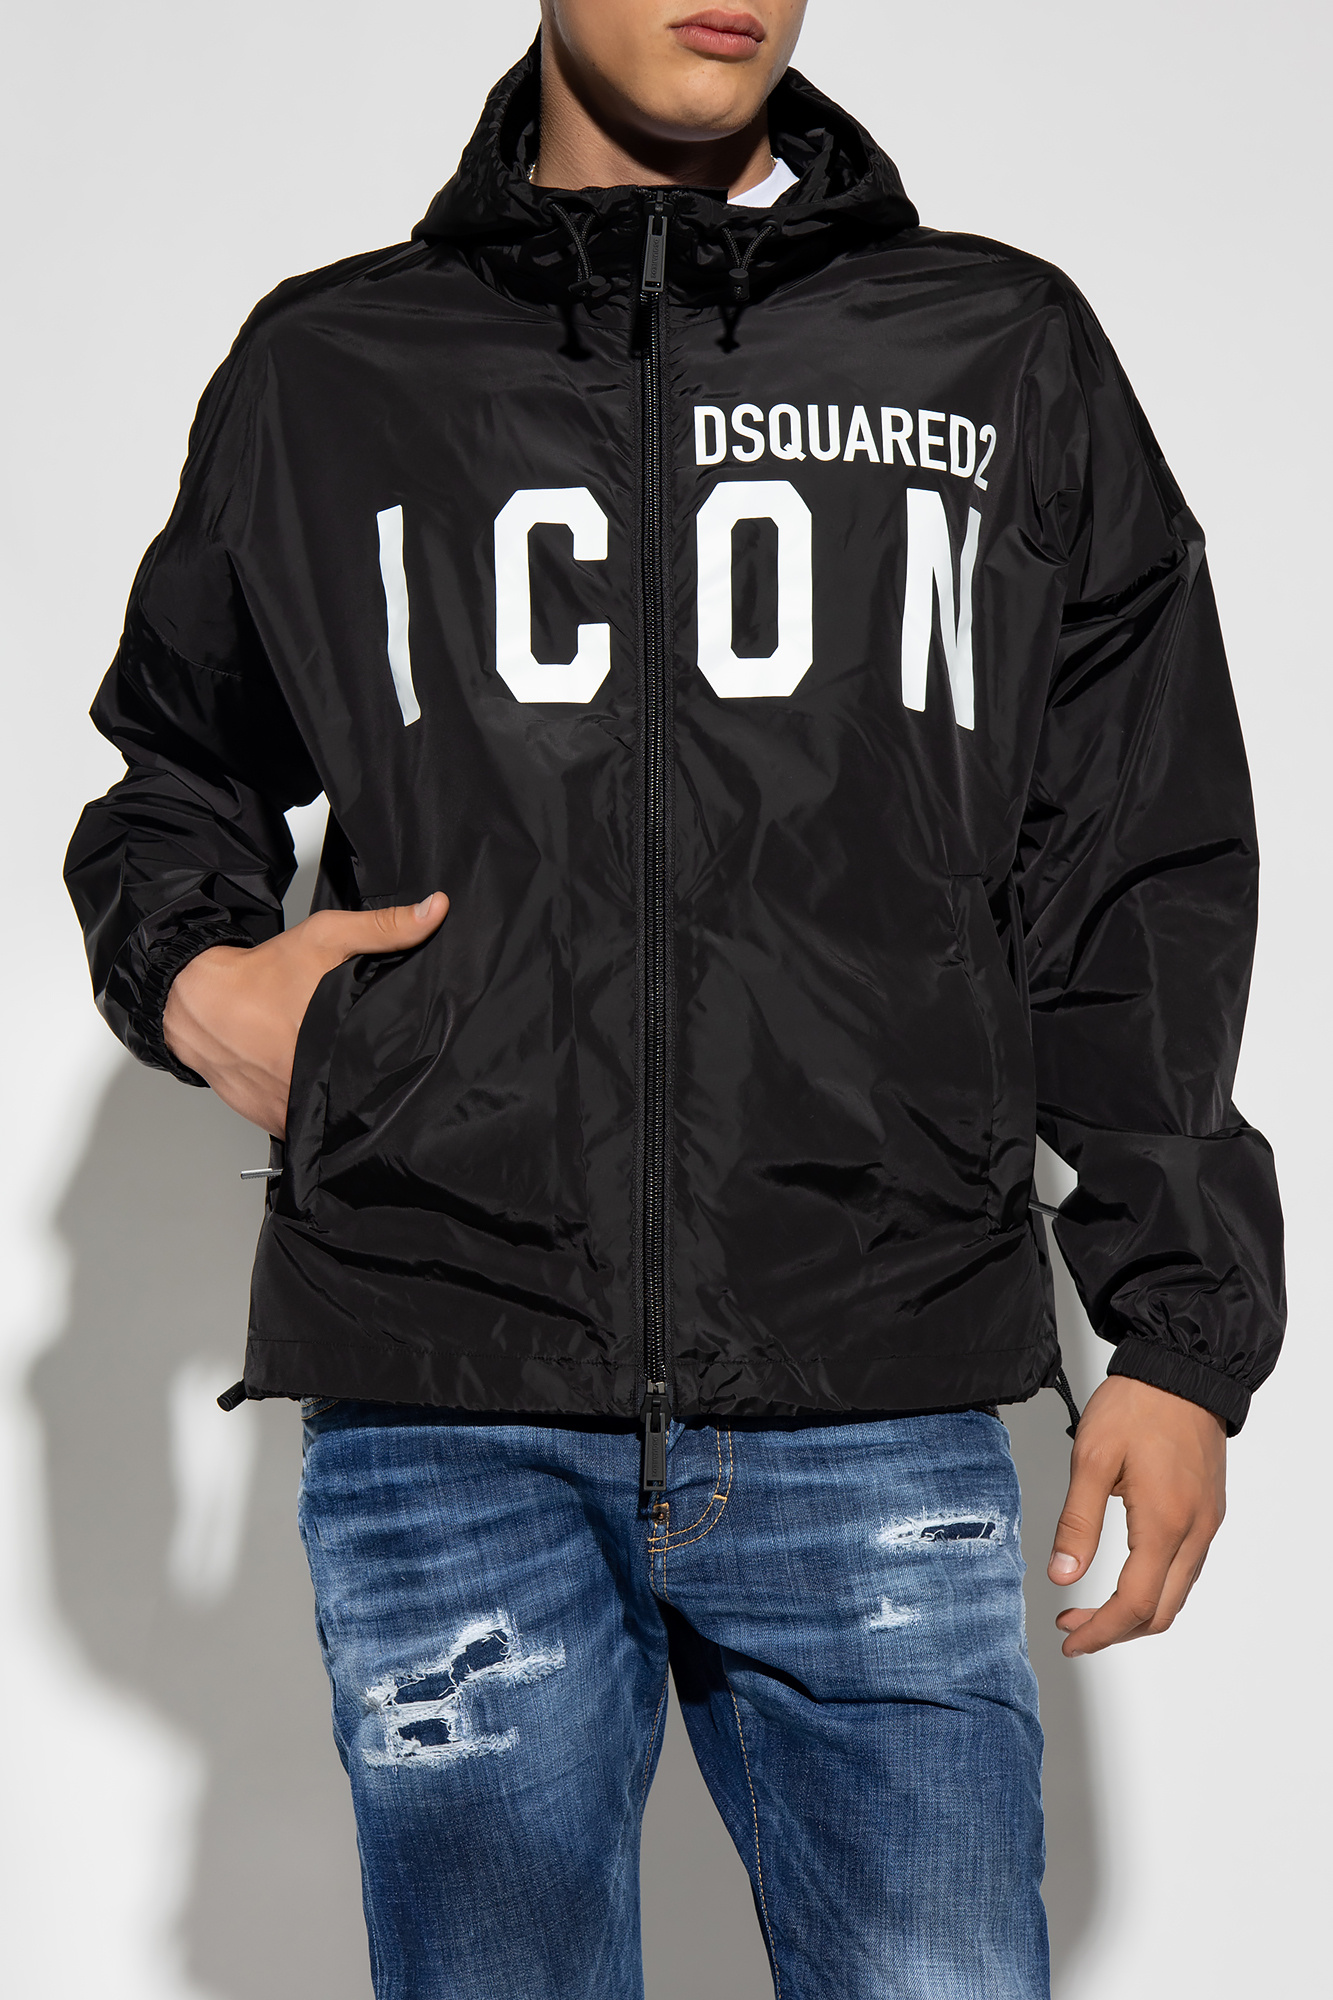 Dsquared2 Jacket with logo | Men's Clothing | Vitkac